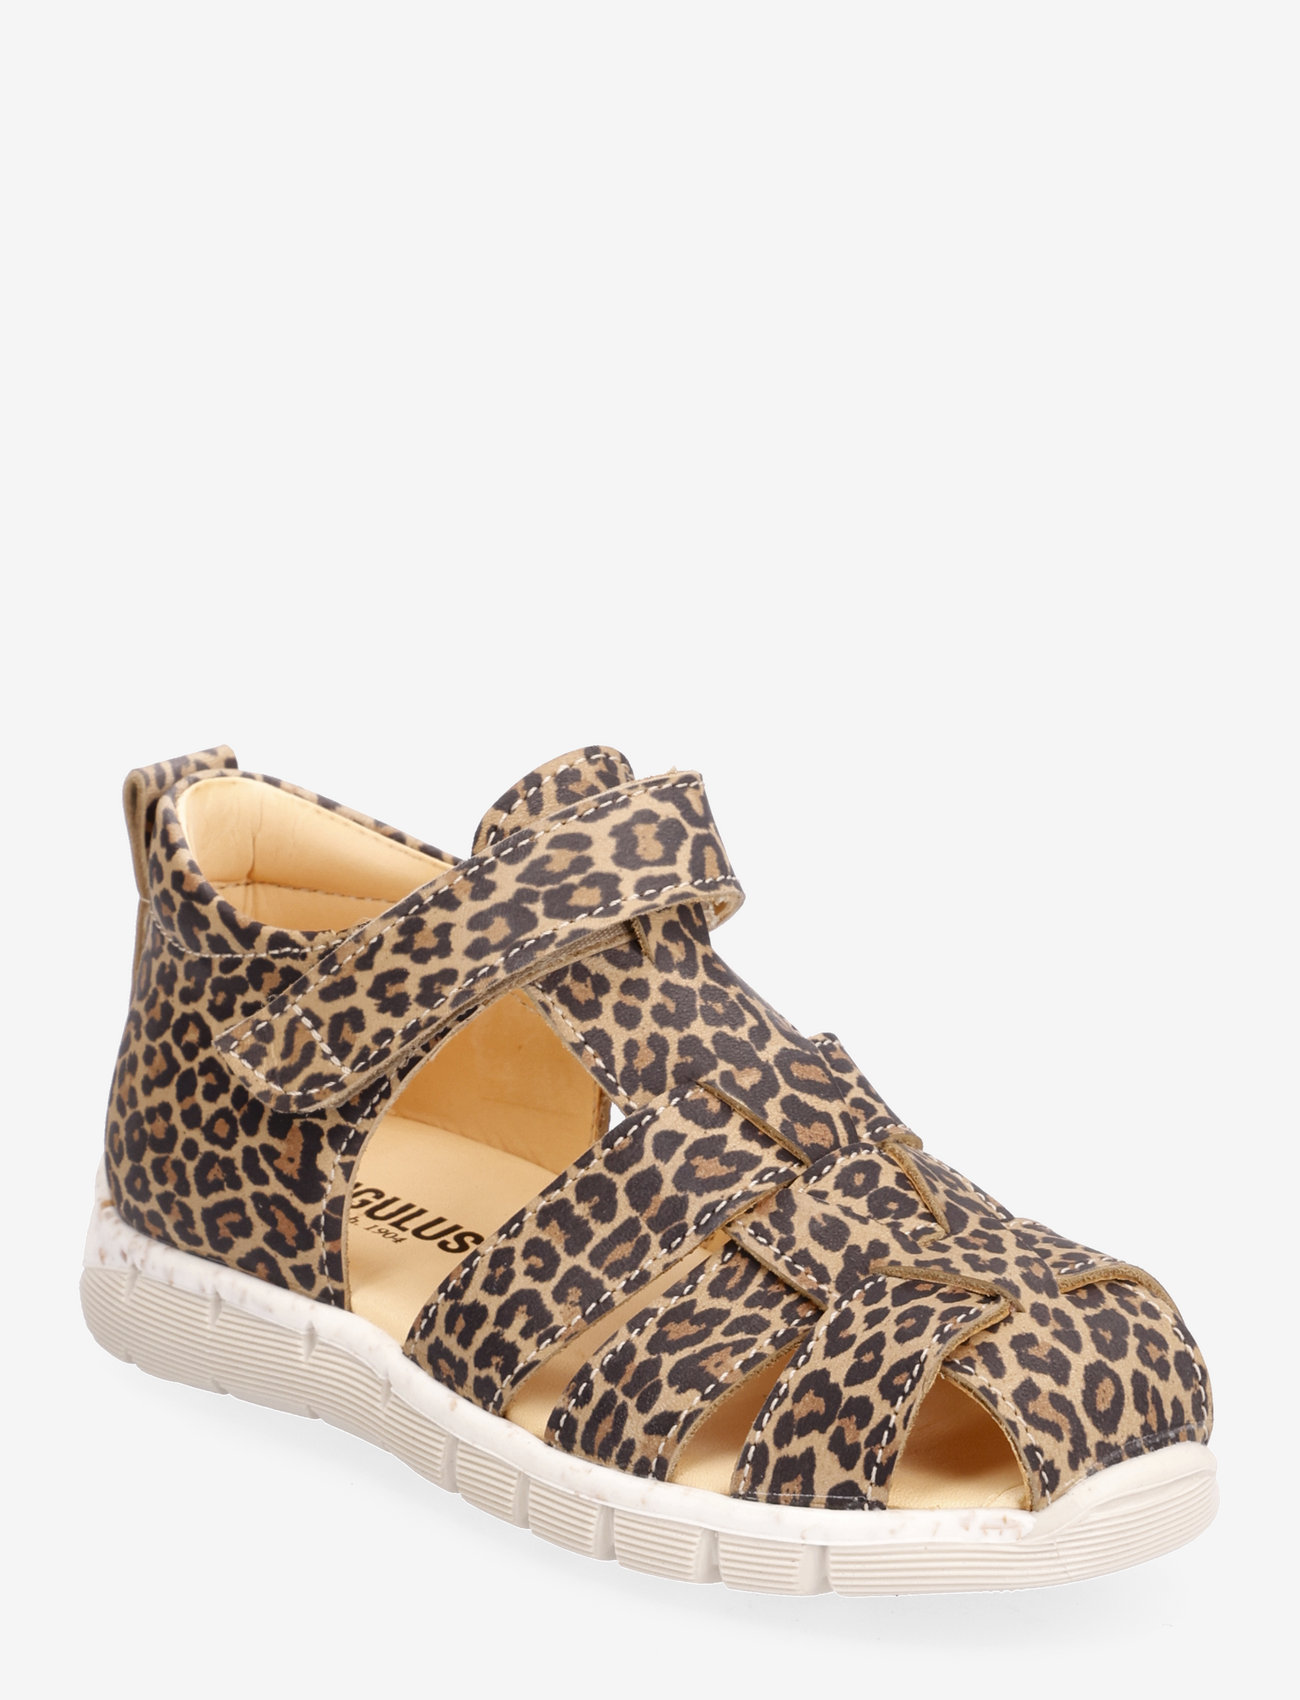 ANGULUS - Sandals - flat - closed toe -  - 2185 leopard - 0